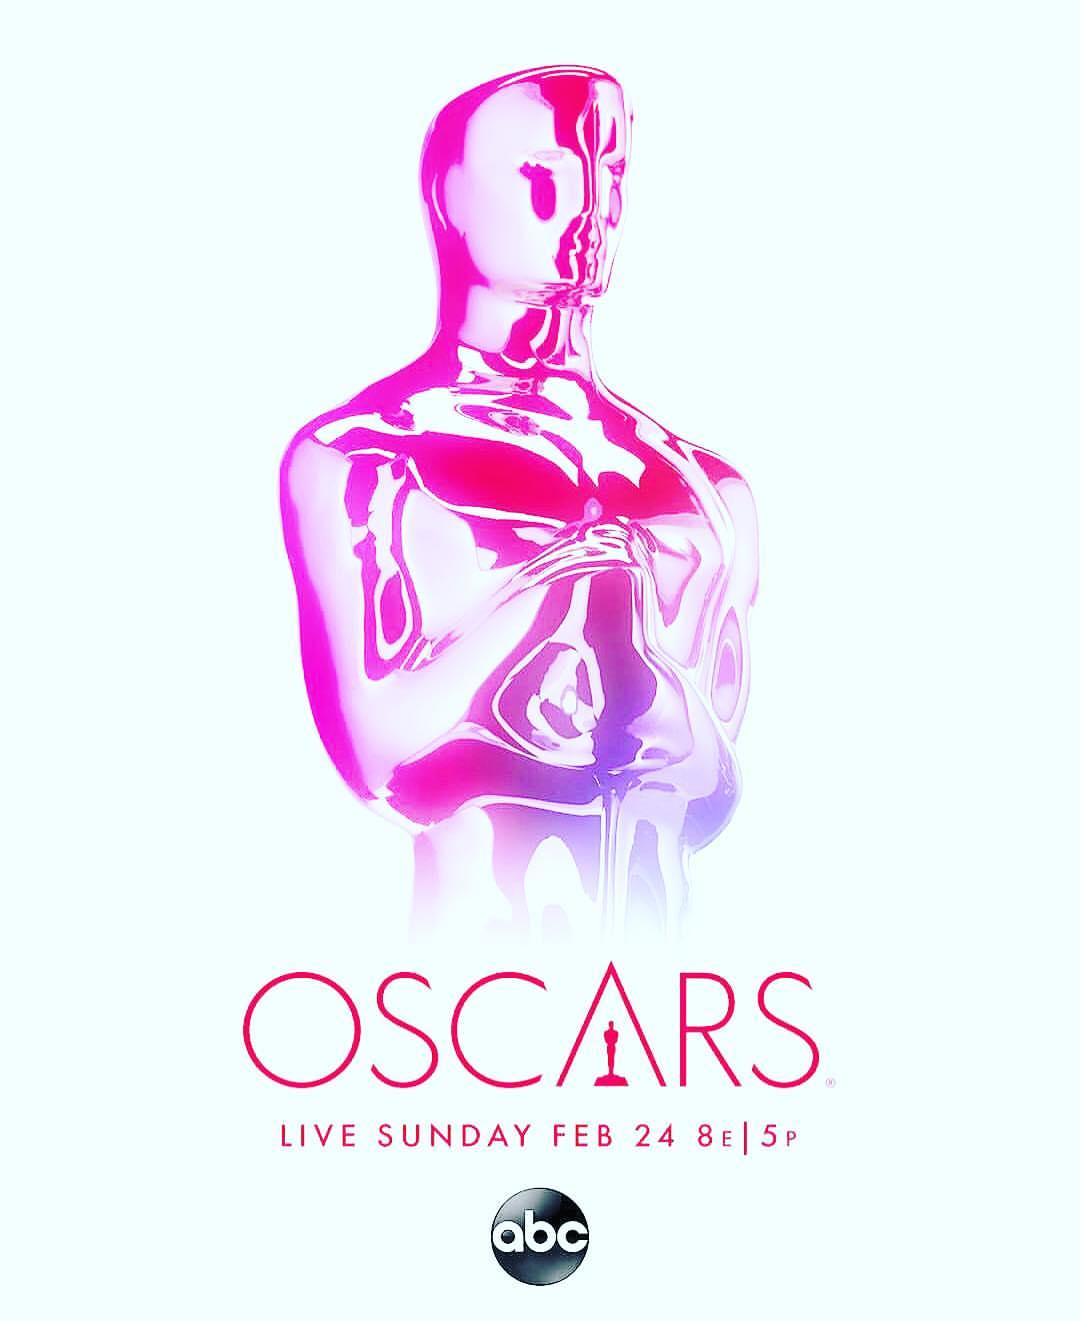 ABC Oscars 2019